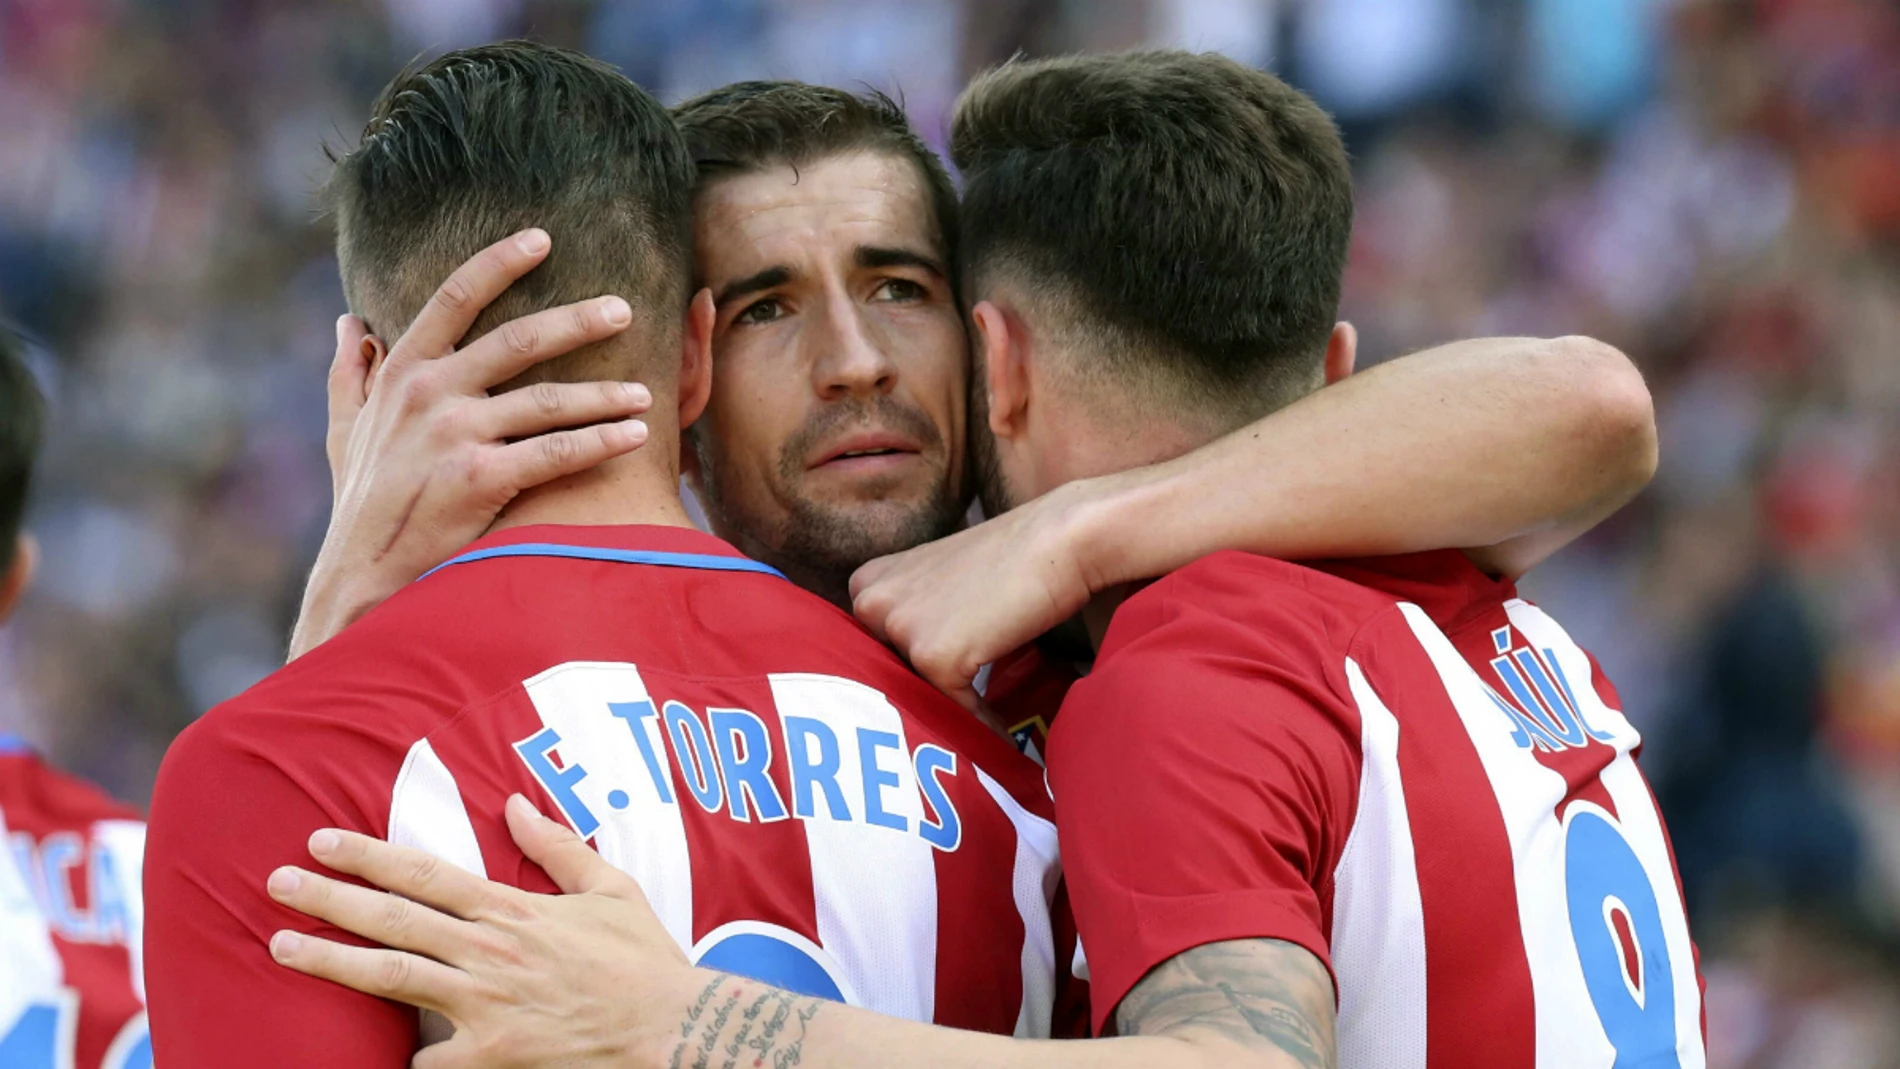 Torres, Gabi y Saúl celebran un gol del Atlético